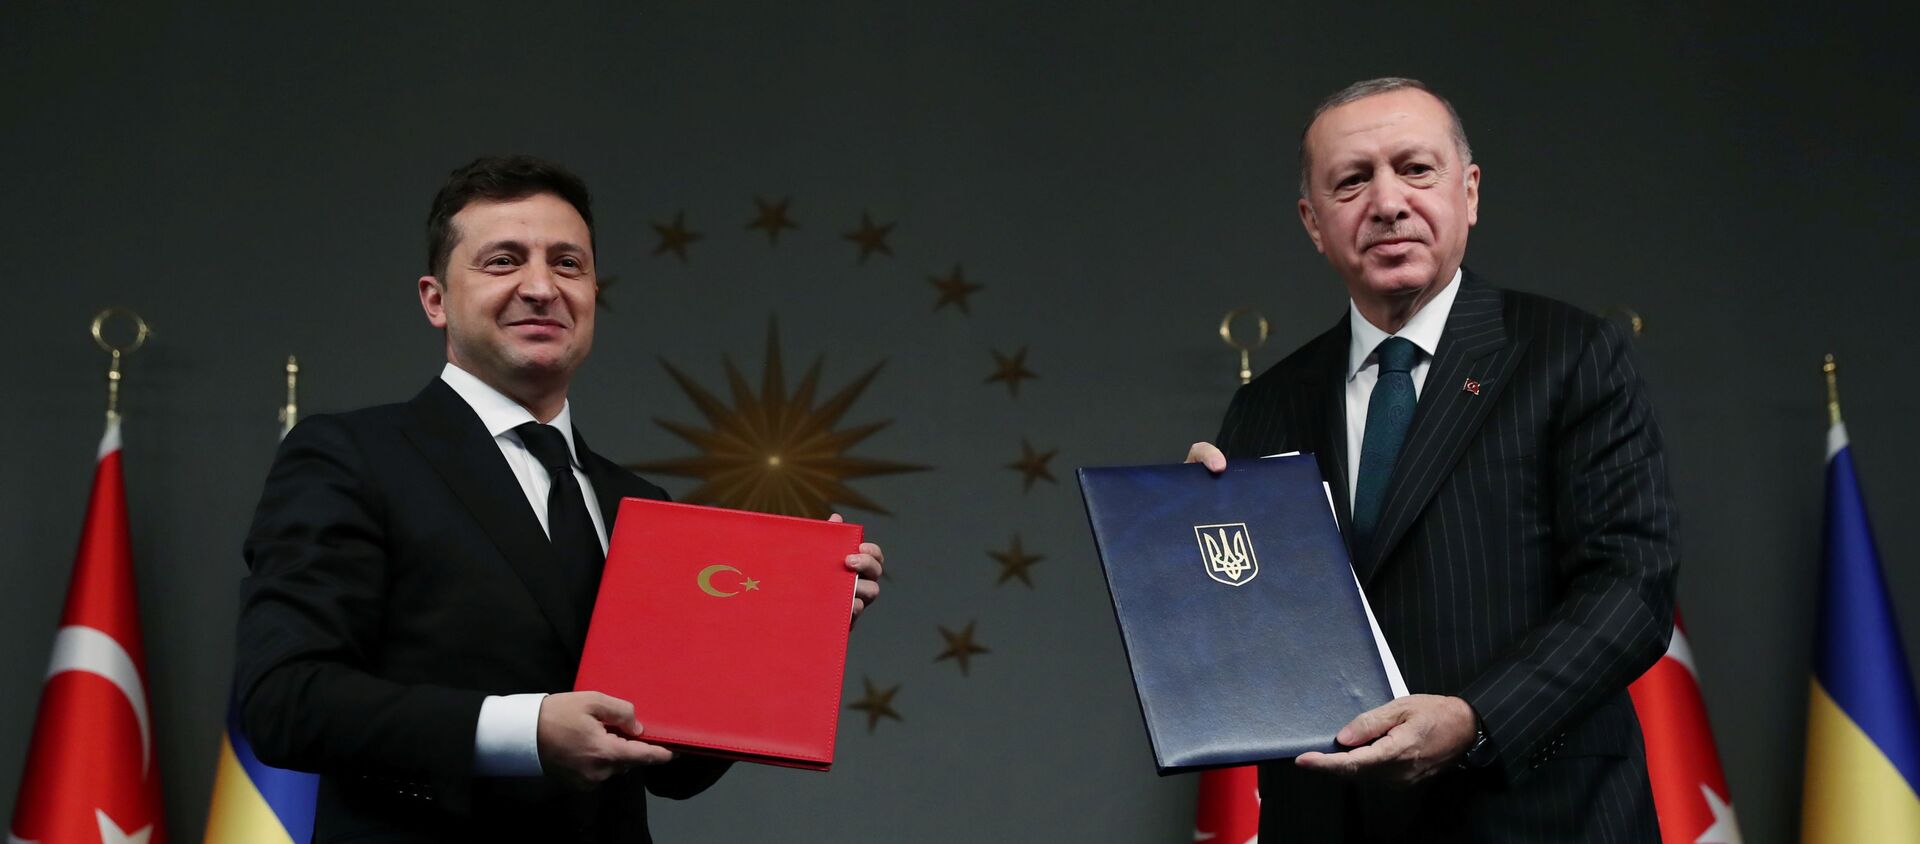 El presidente de Turquía, Recep Tayyip Erdogan y el presidente de Ucrania, Volodímir Zelenski - Sputnik Mundo, 1920, 16.10.2020